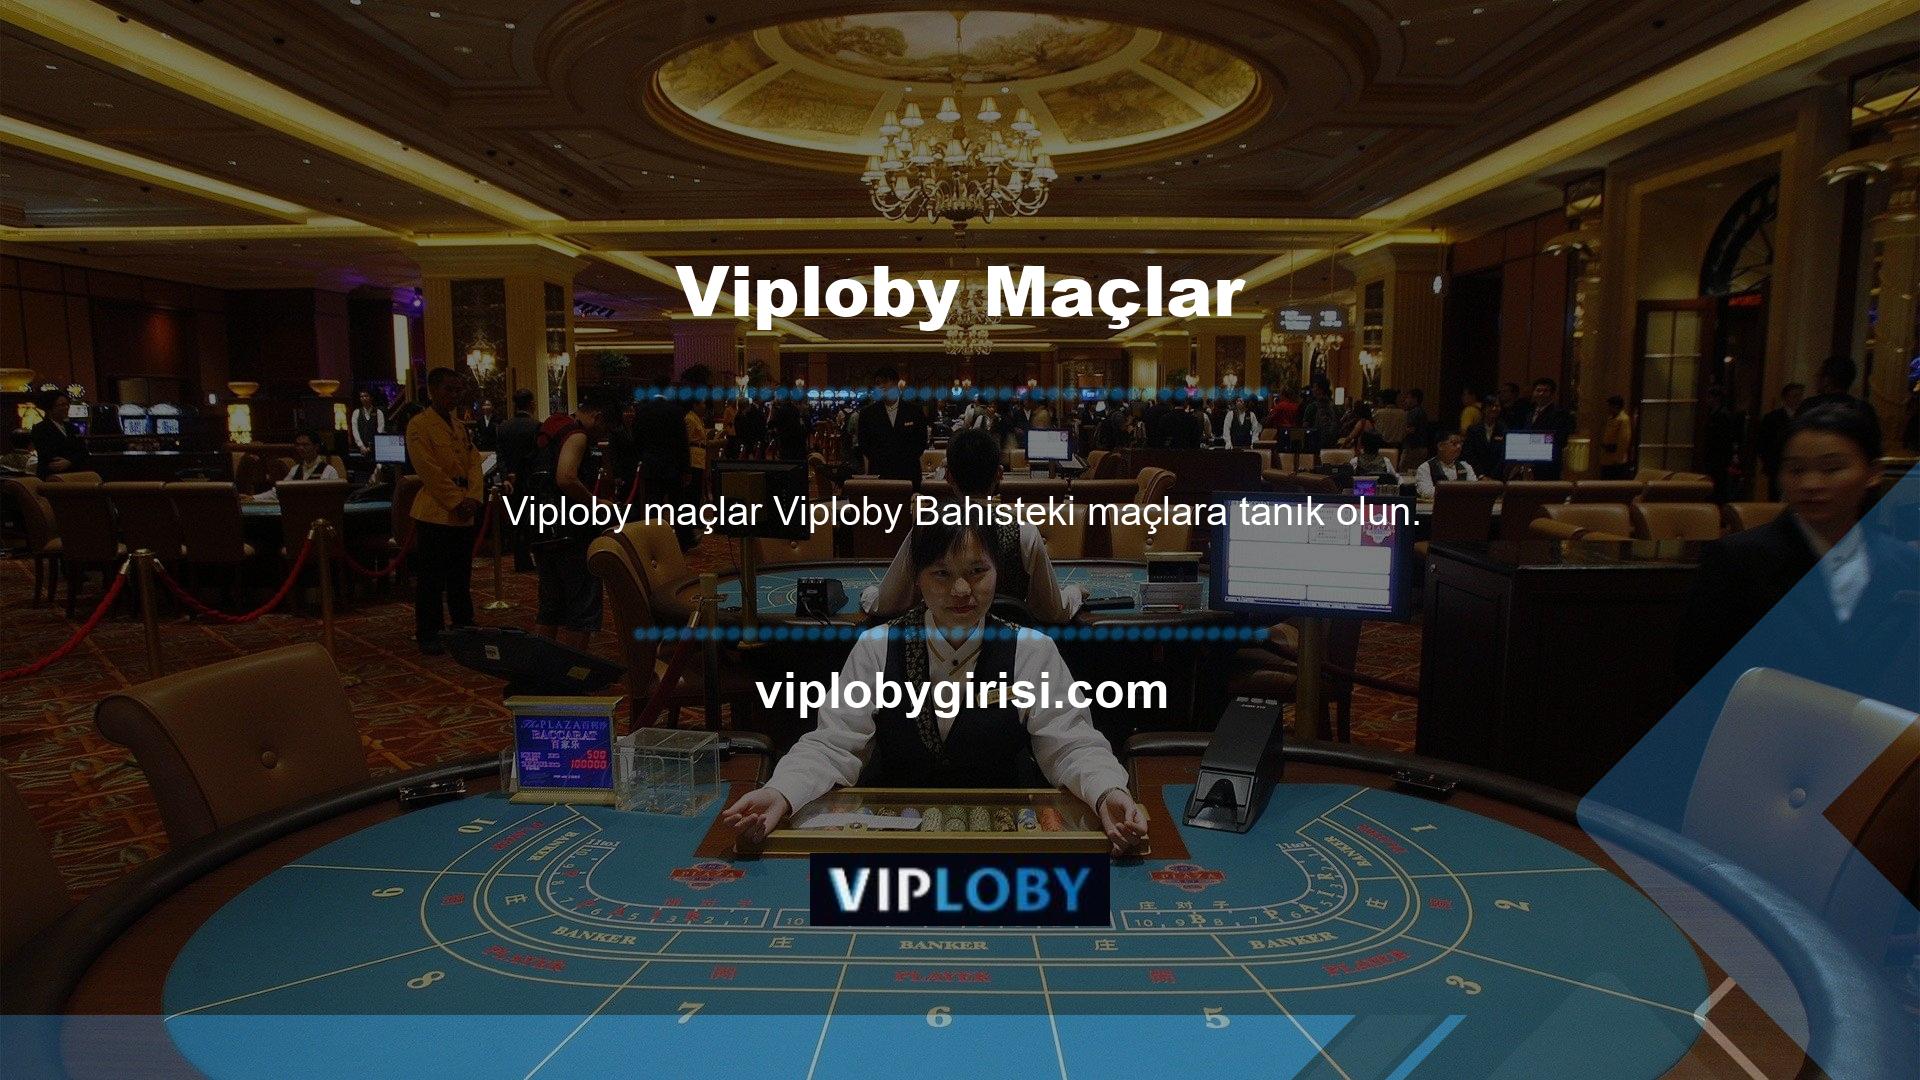 Üyeler Viploby oyunlarının canlı yayınına web sitesi üzerinden erişebilmektedir